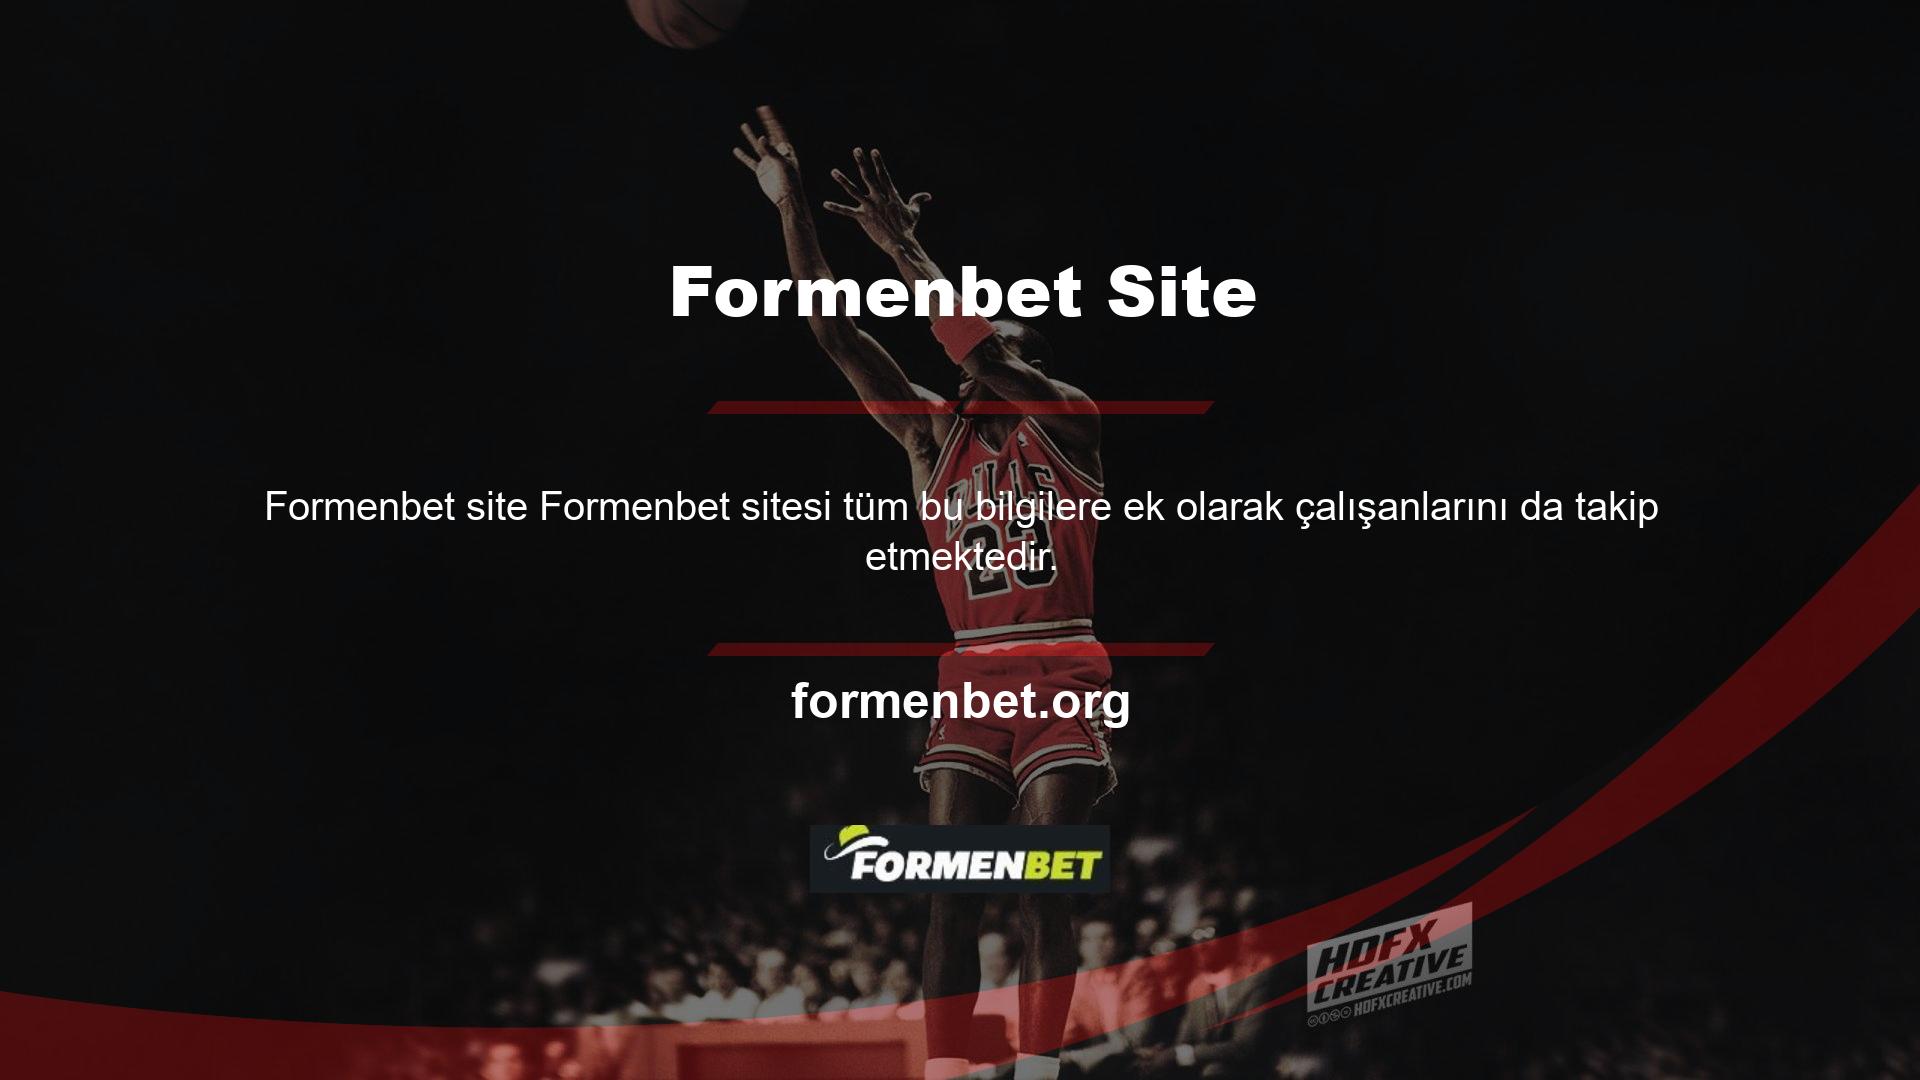 Tüm bu önlemler sayesinde Formenbet web sitesinde bugüne kadar herhangi bir dolandırıcılık gerçekleşmemiştir